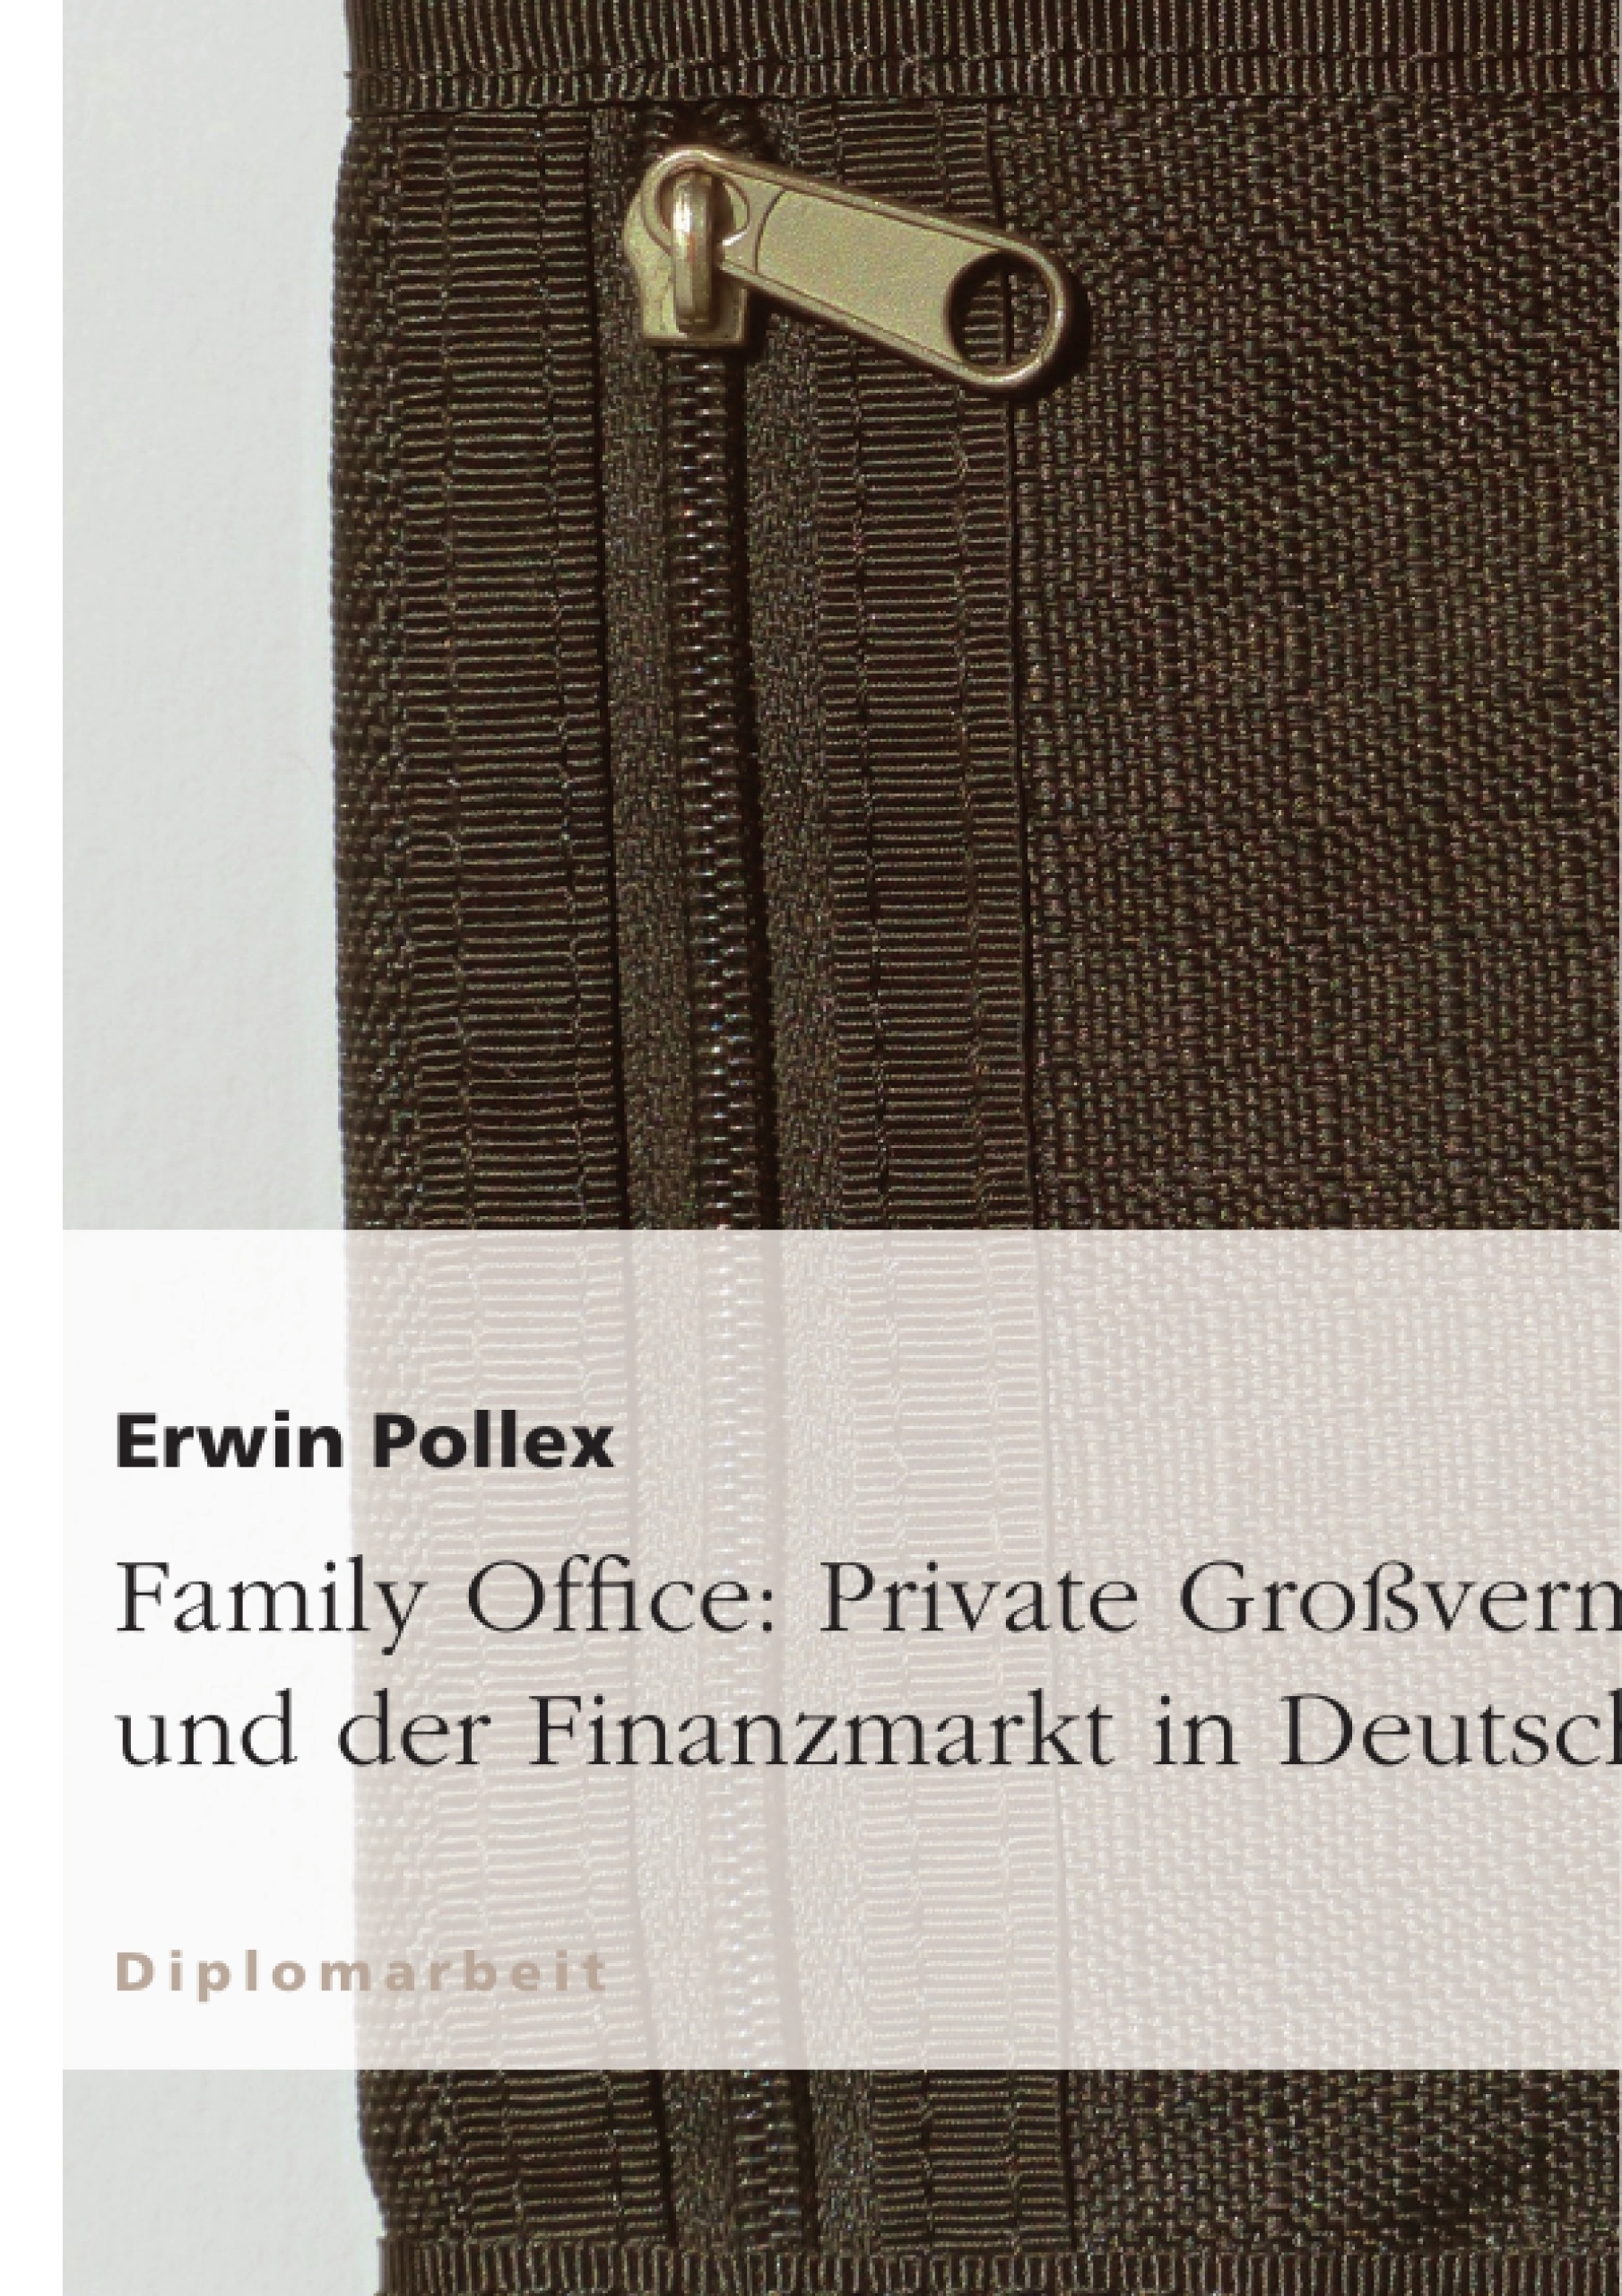 Titre: Family Office: Private Großvermögen und der Finanzmarkt in Deutschland